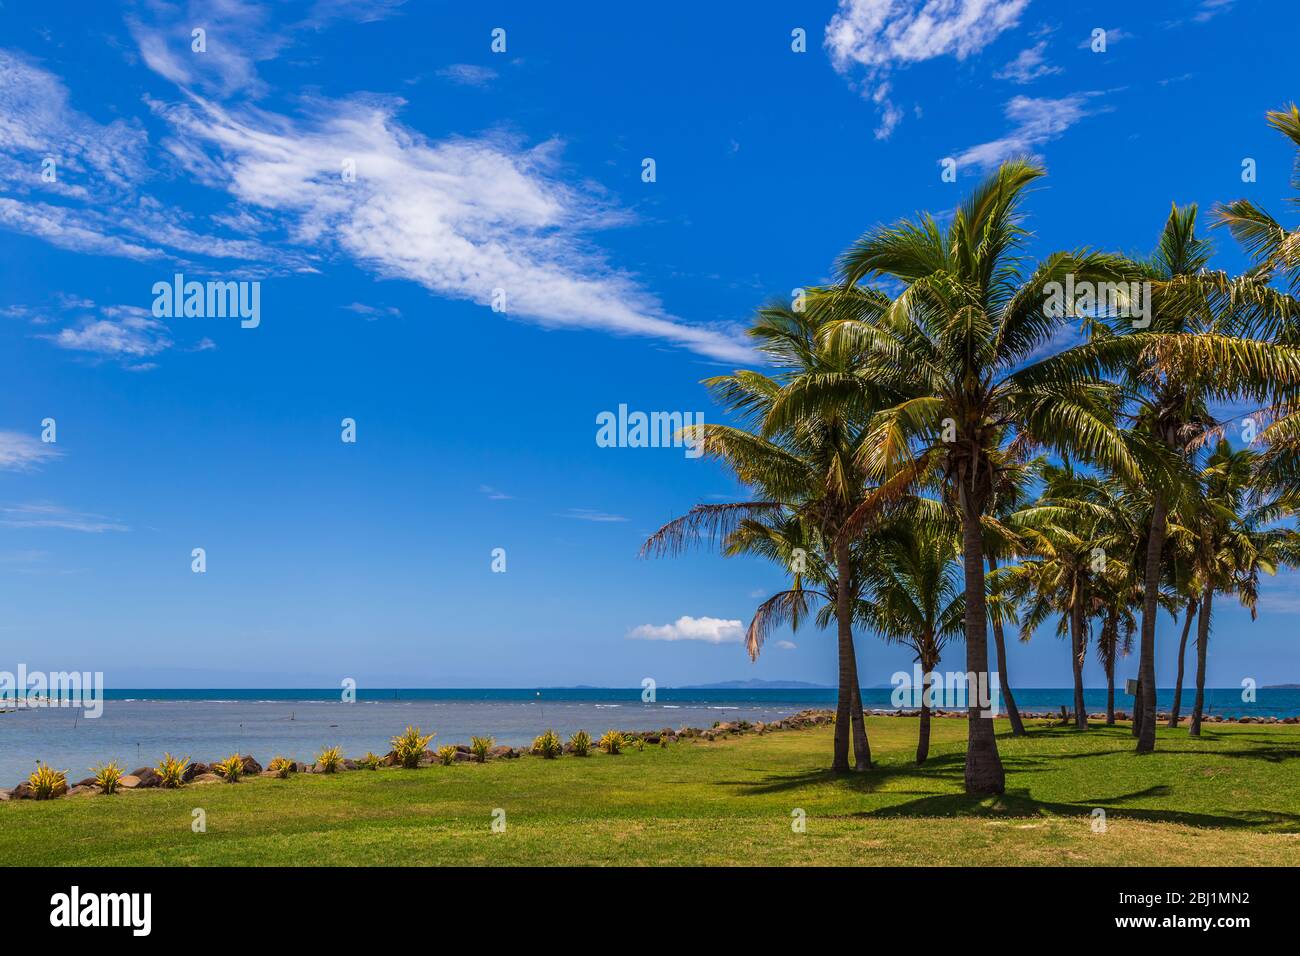 Kokosnusspalme (Cocos nucifera), mit Kokosnüssen, gegen einen blauen Himmel mit flauschigen Wolken. Stockfoto